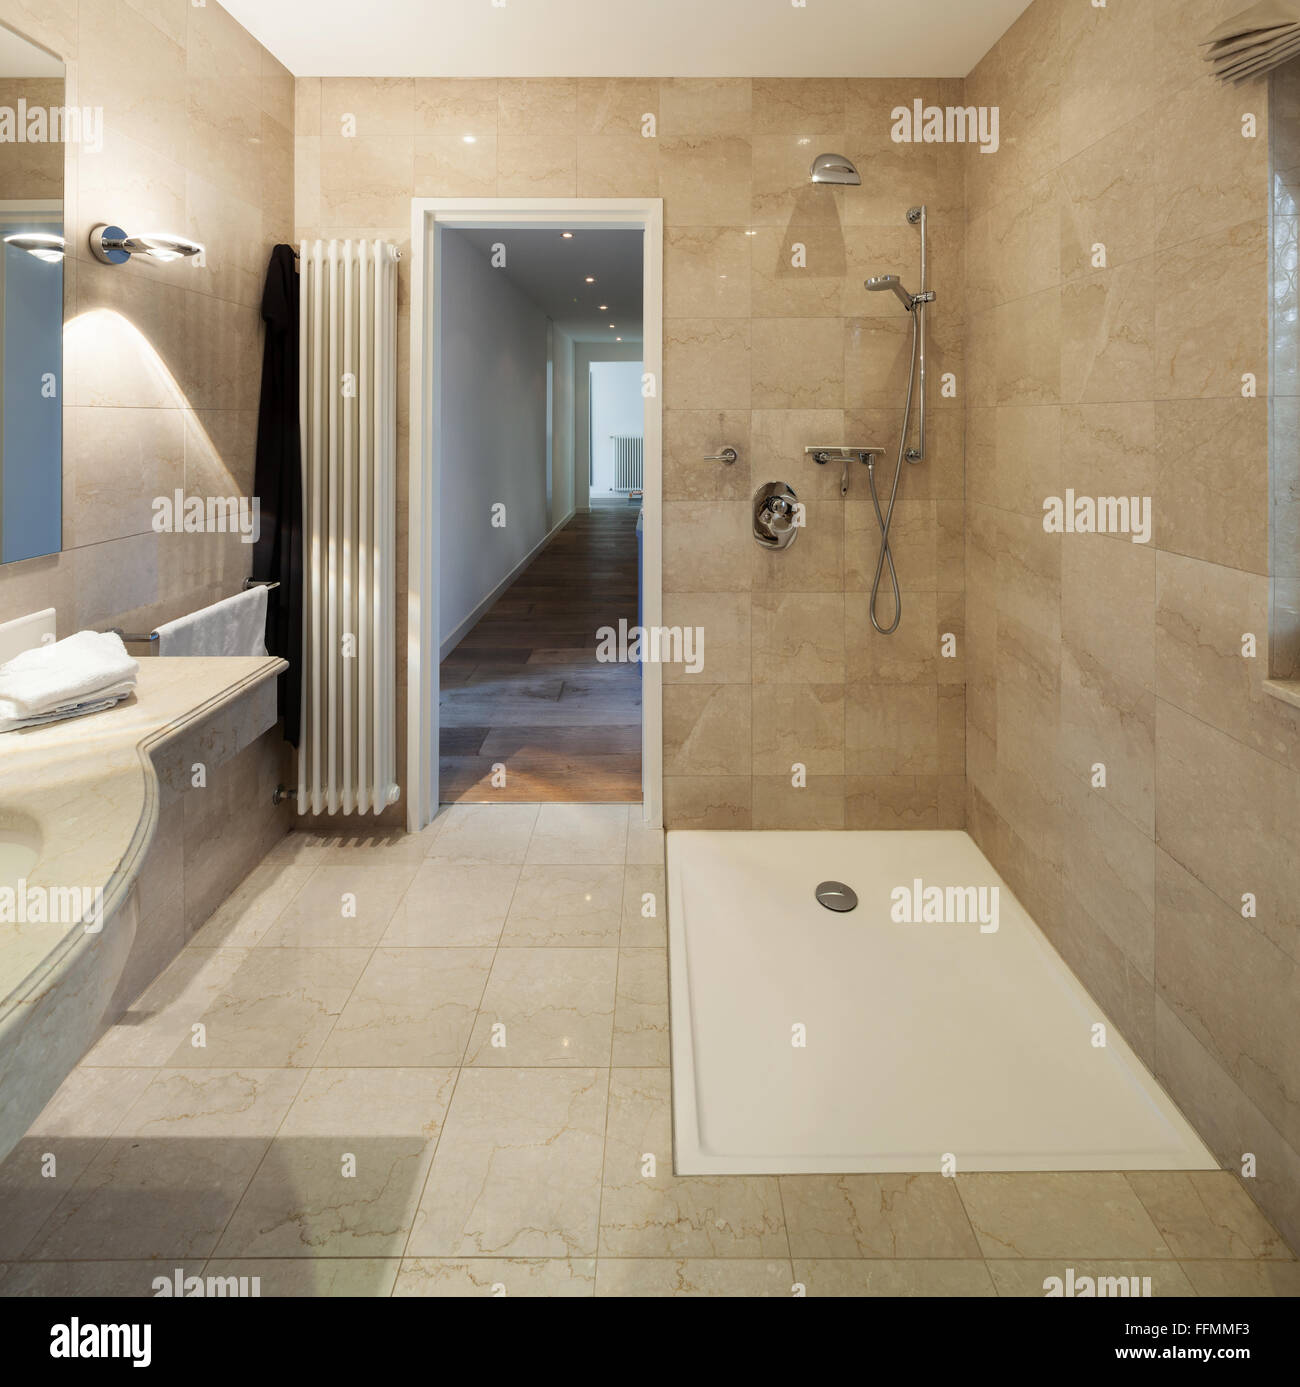 L'intérieur d'une maison moderne, salle de bains, design classique Banque D'Images